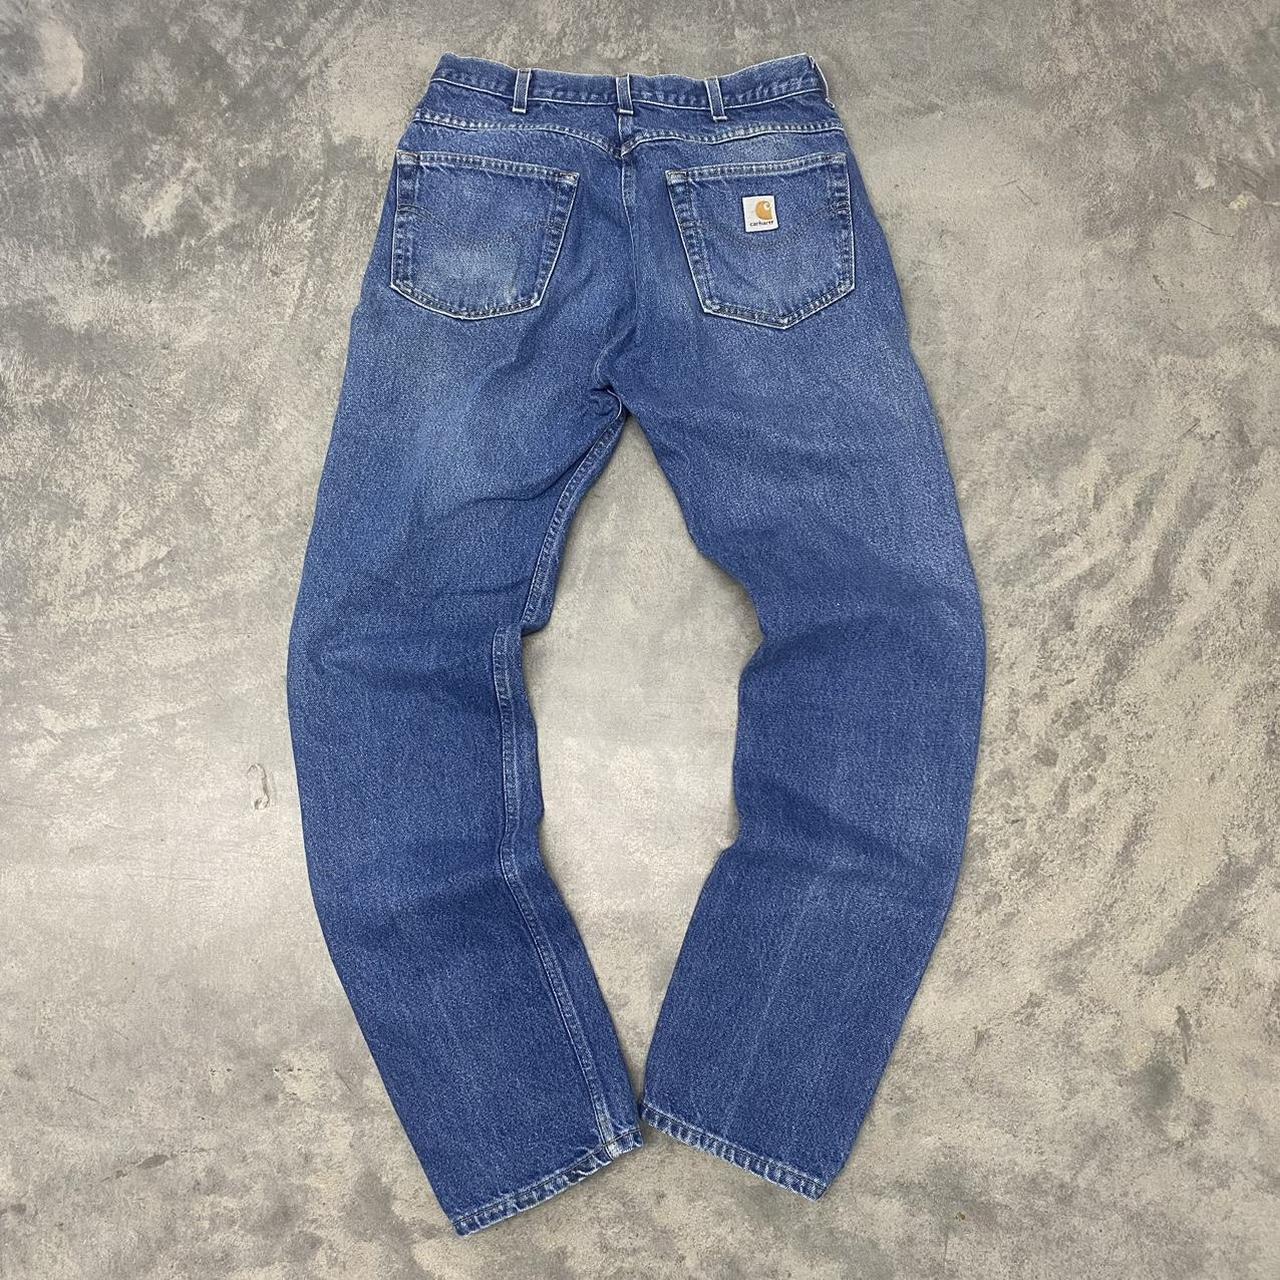 Carhartt Blue Jeans 30 x 34 Condition 8/10 BUNDLE... - Depop